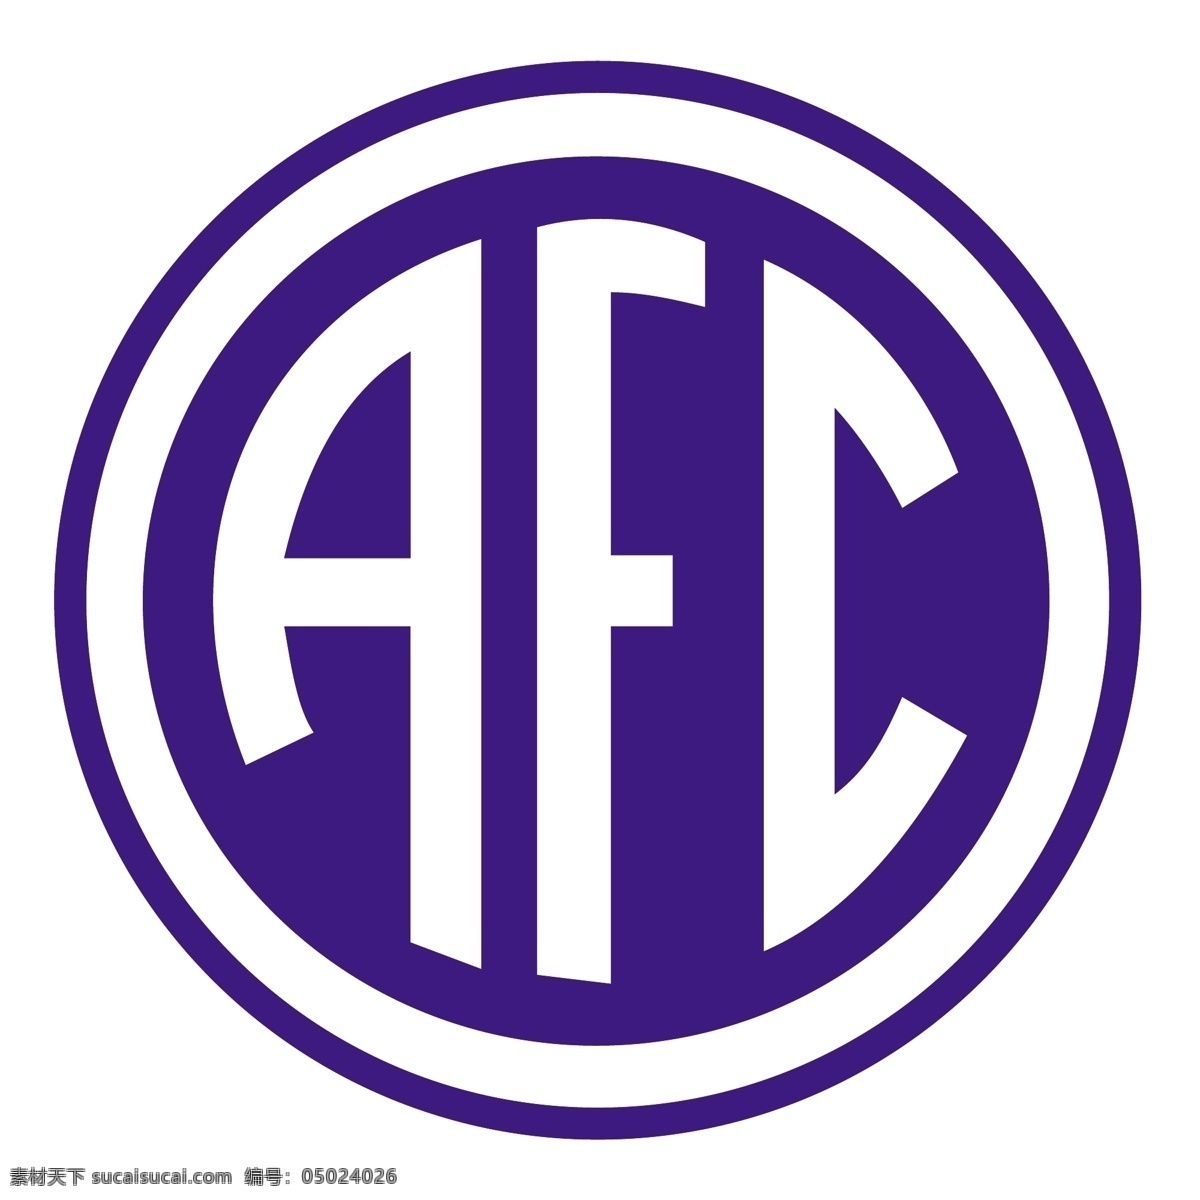 安德 拉迪纳 足球 俱乐部 sp 自由 标志 psd源文件 logo设计